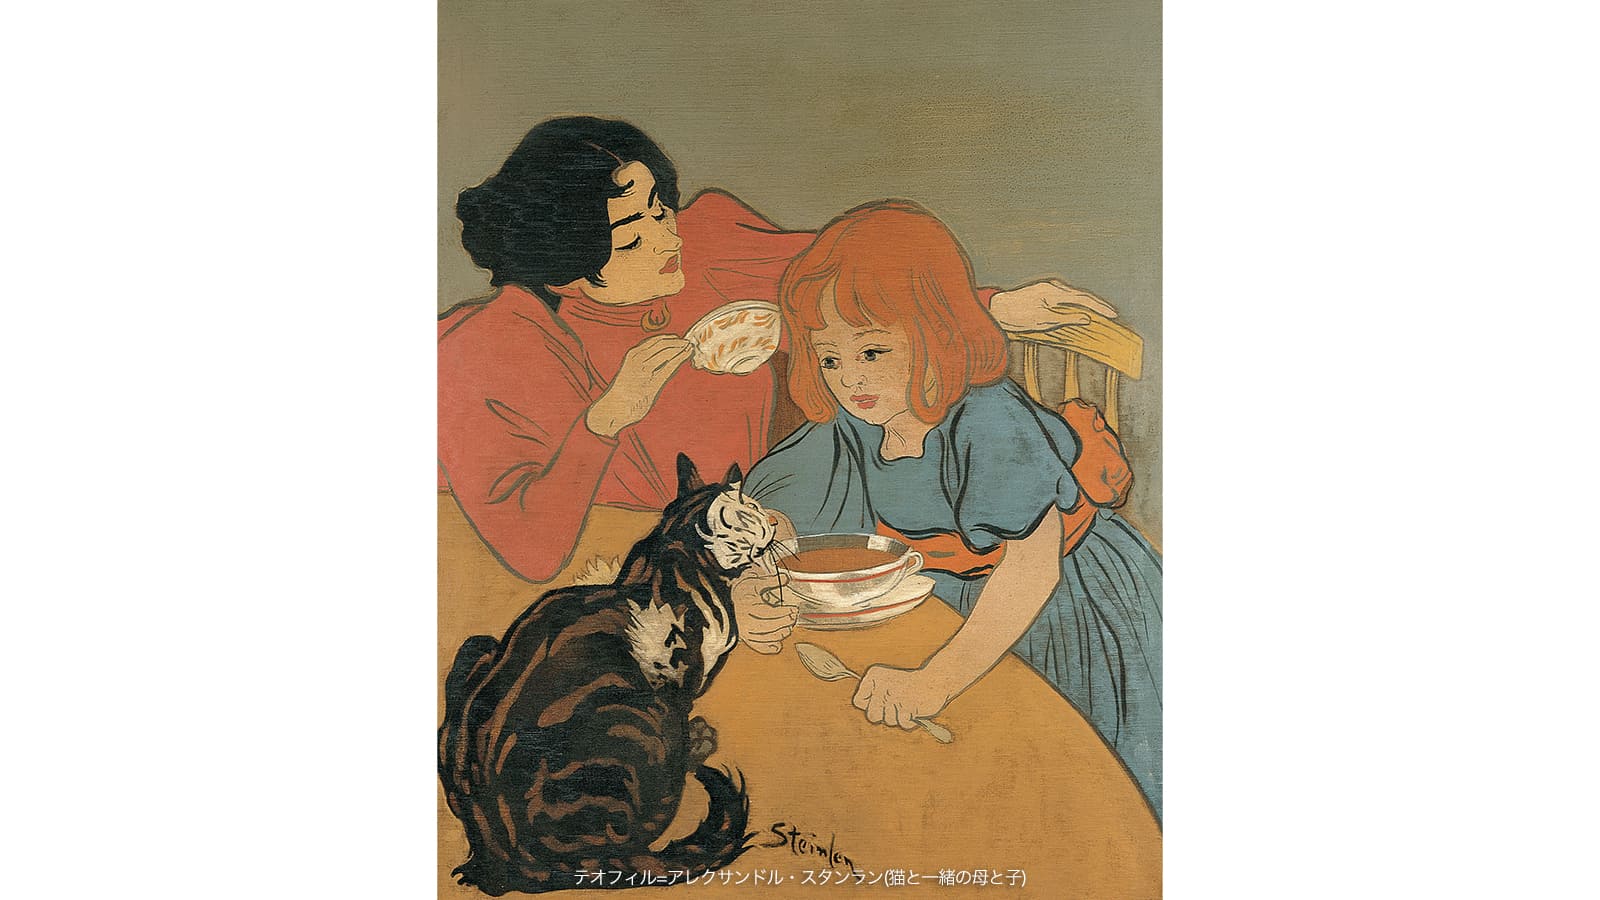 テオフィル=アレクサンドル・スタンラン(猫と一緒の母と子)